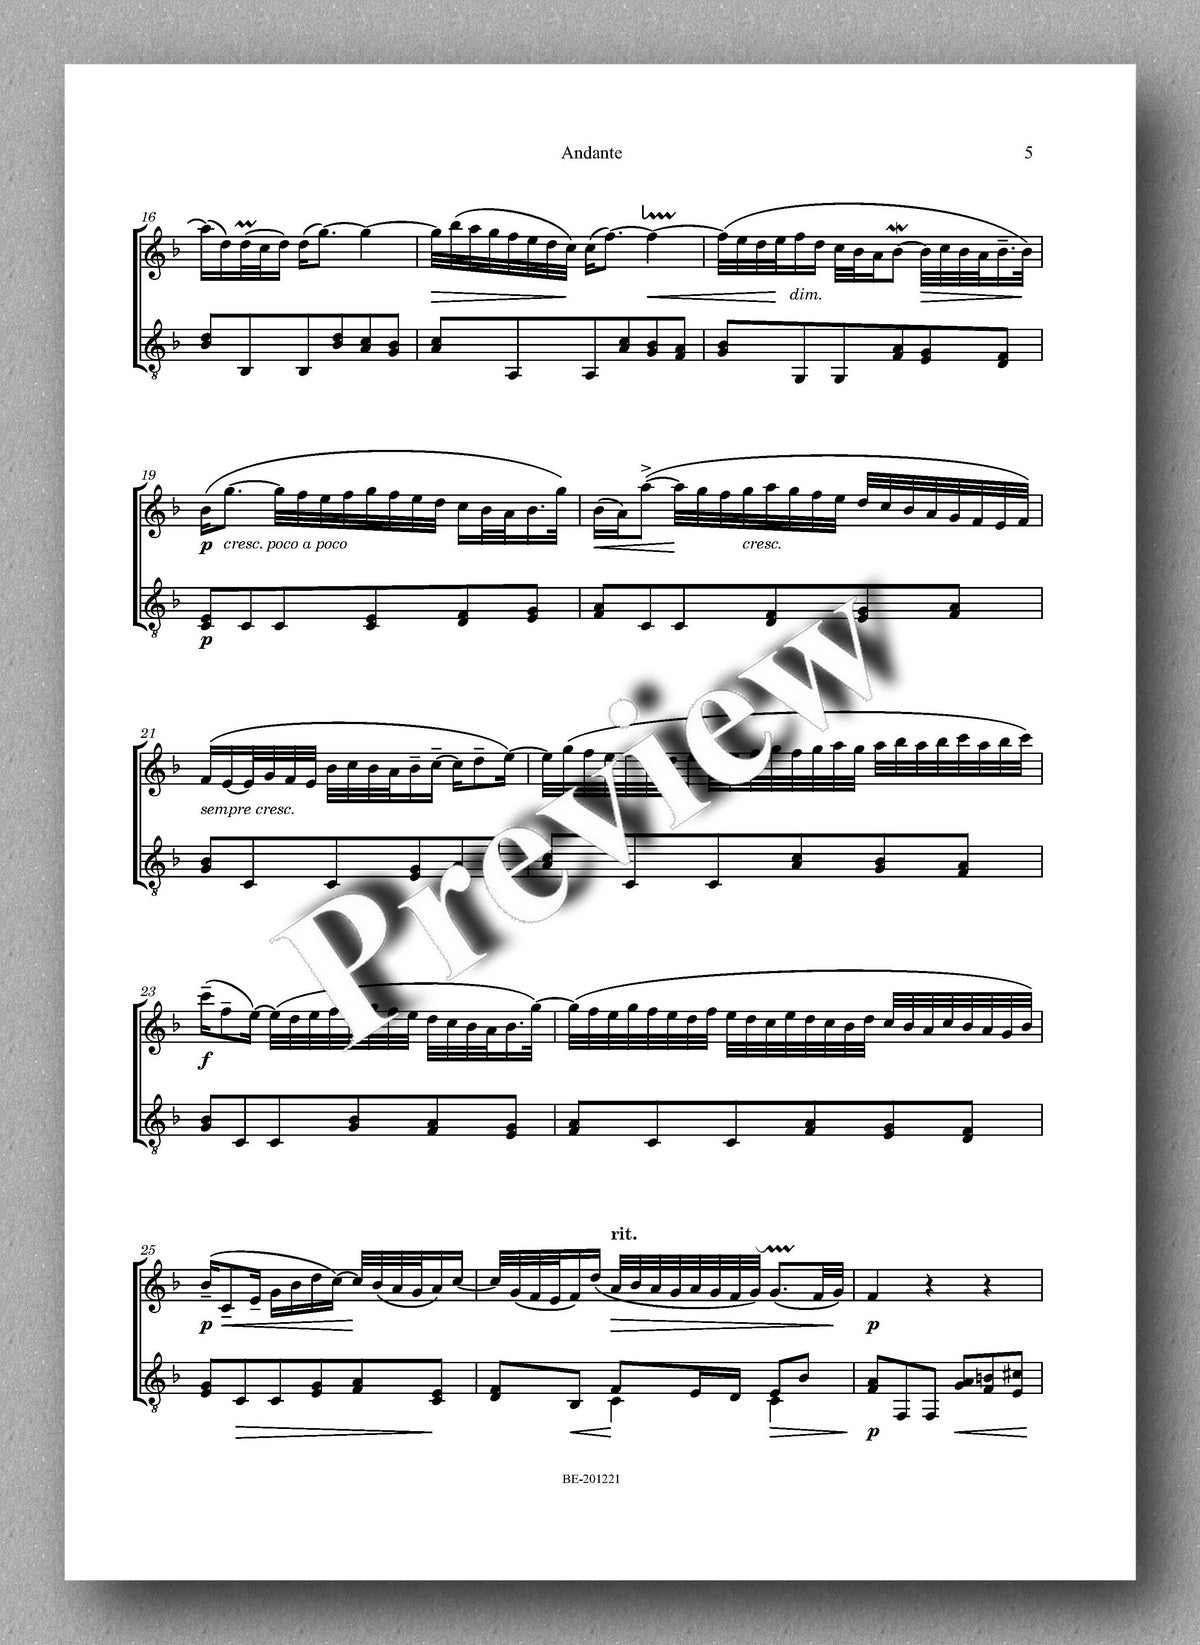 Rebay [159], Andante aus dem Italienischen Konzert von J.S. Bach - music score 2